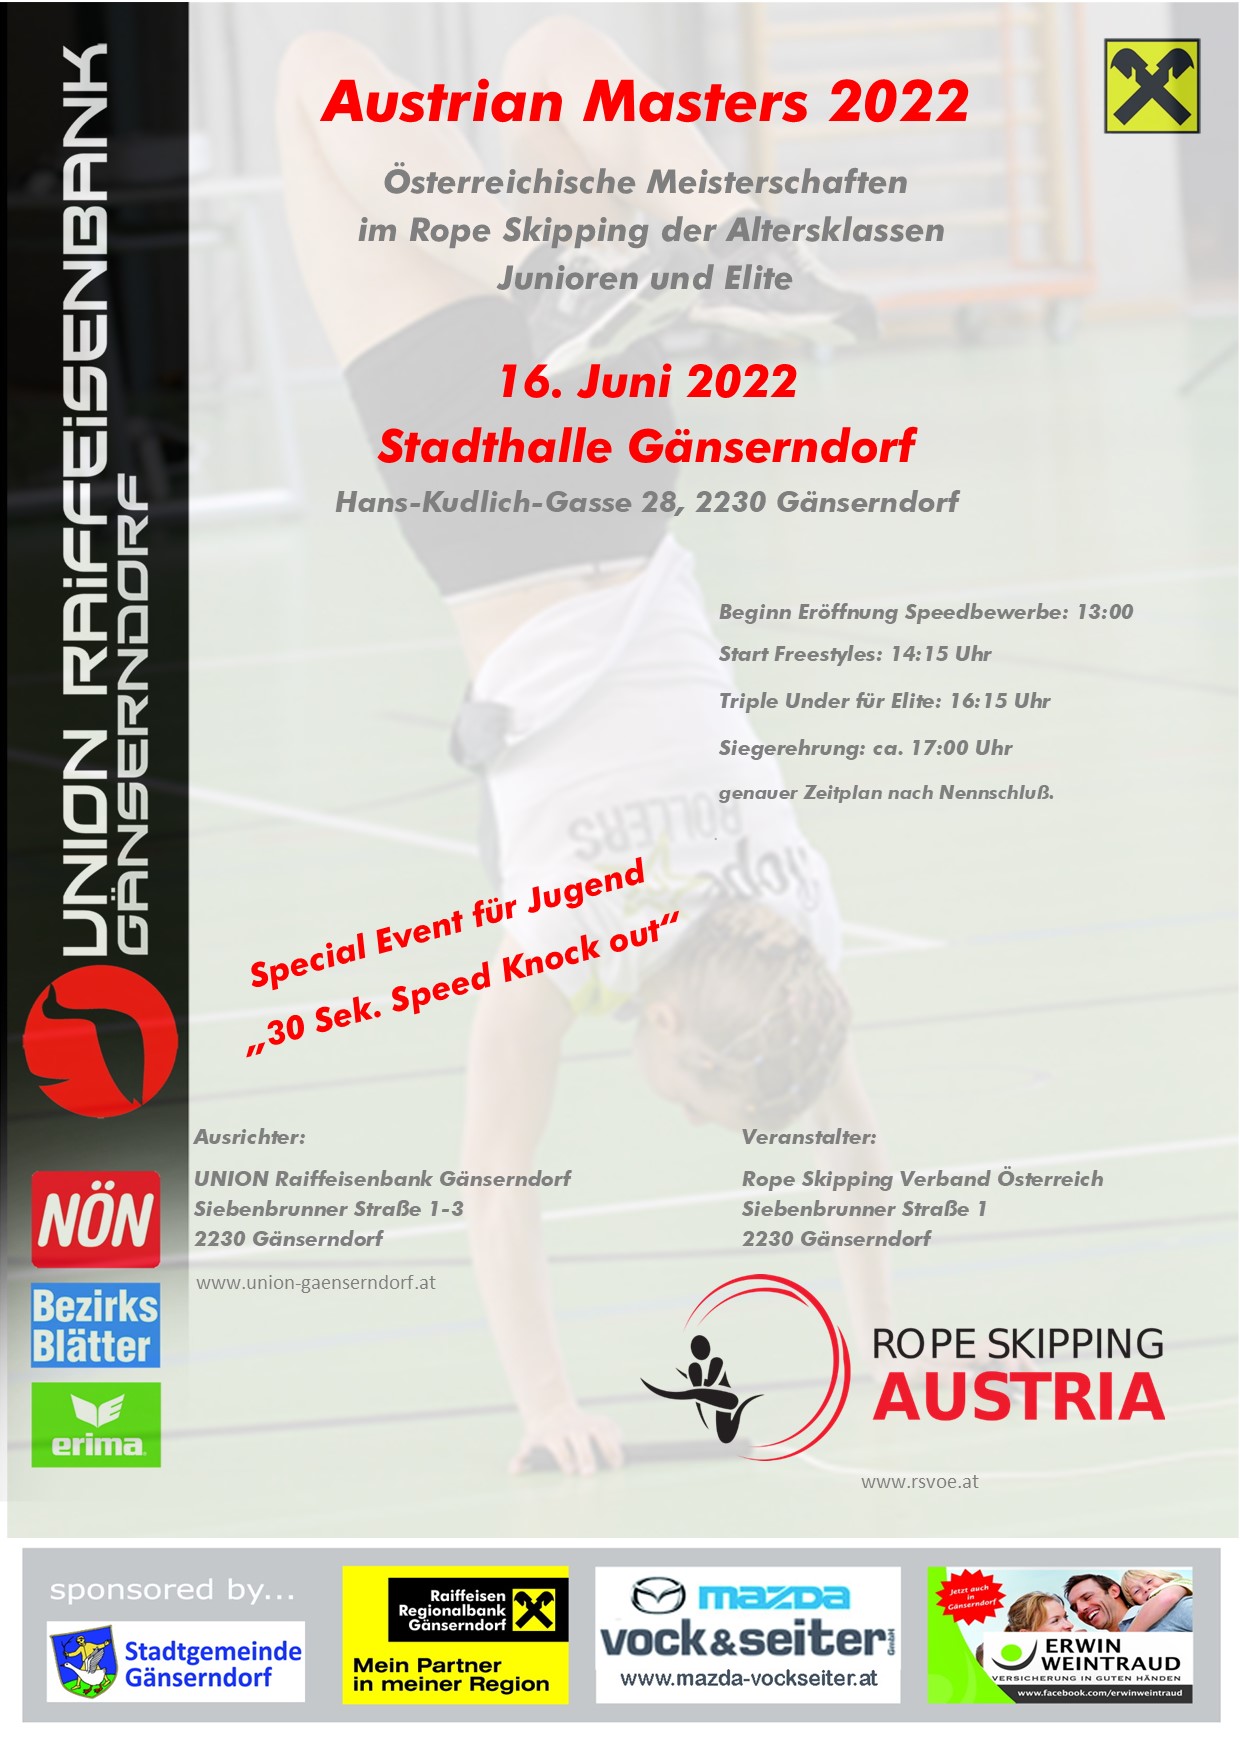 Rope Skipping Austrian Masters 2022 (JuniorInnen und Elite)